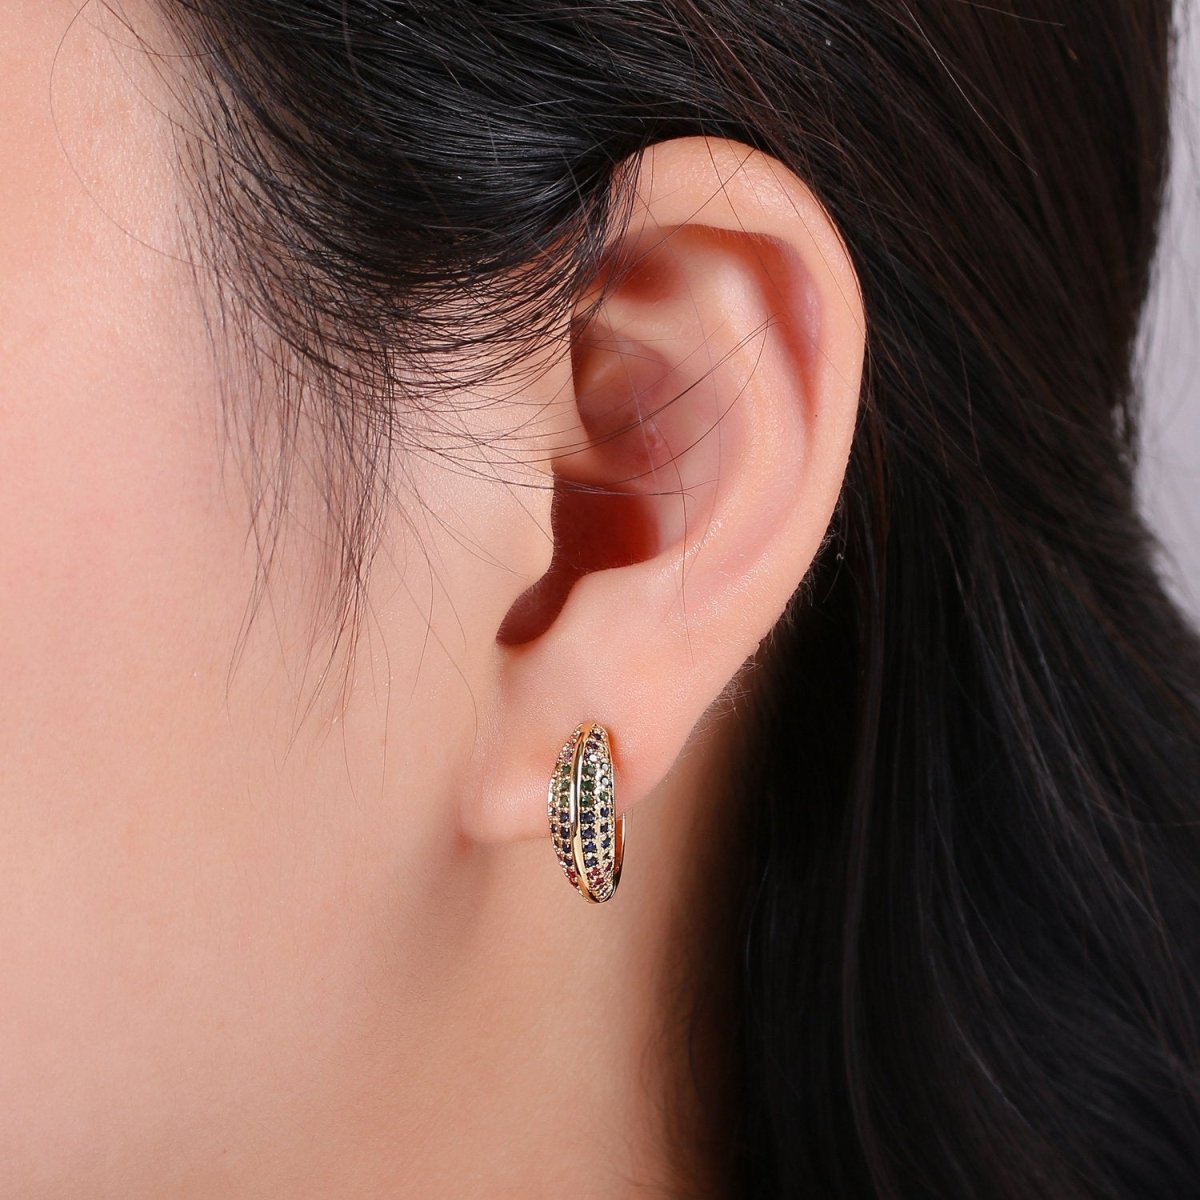 Huggie Earrings, Small hoop earrings, Gold hoops, Chunky Hoop Earrings, Cz Huggie Hoop Earrings, Minimalist hoop earrings, Dainty Cubic hoop K-861 K-862 - DLUXCA